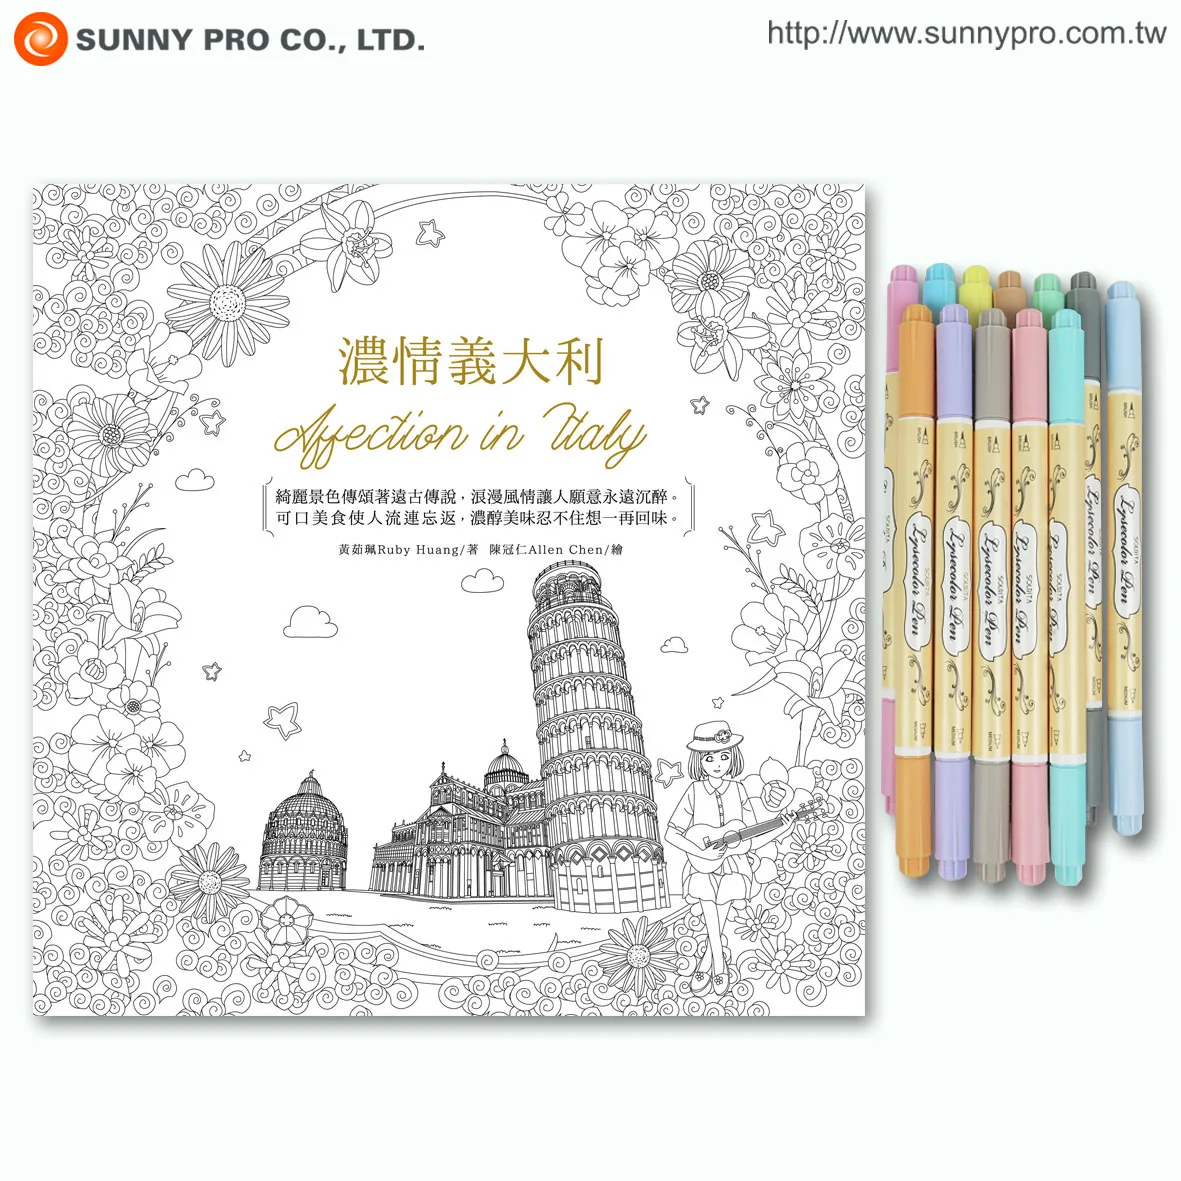 Download Cute Colors Pen Watercolor Adult Coloring Book Set Buy Coloring Book Set Adult Coloring Book Set Watercolor Coloring Book Product On Alibaba Com